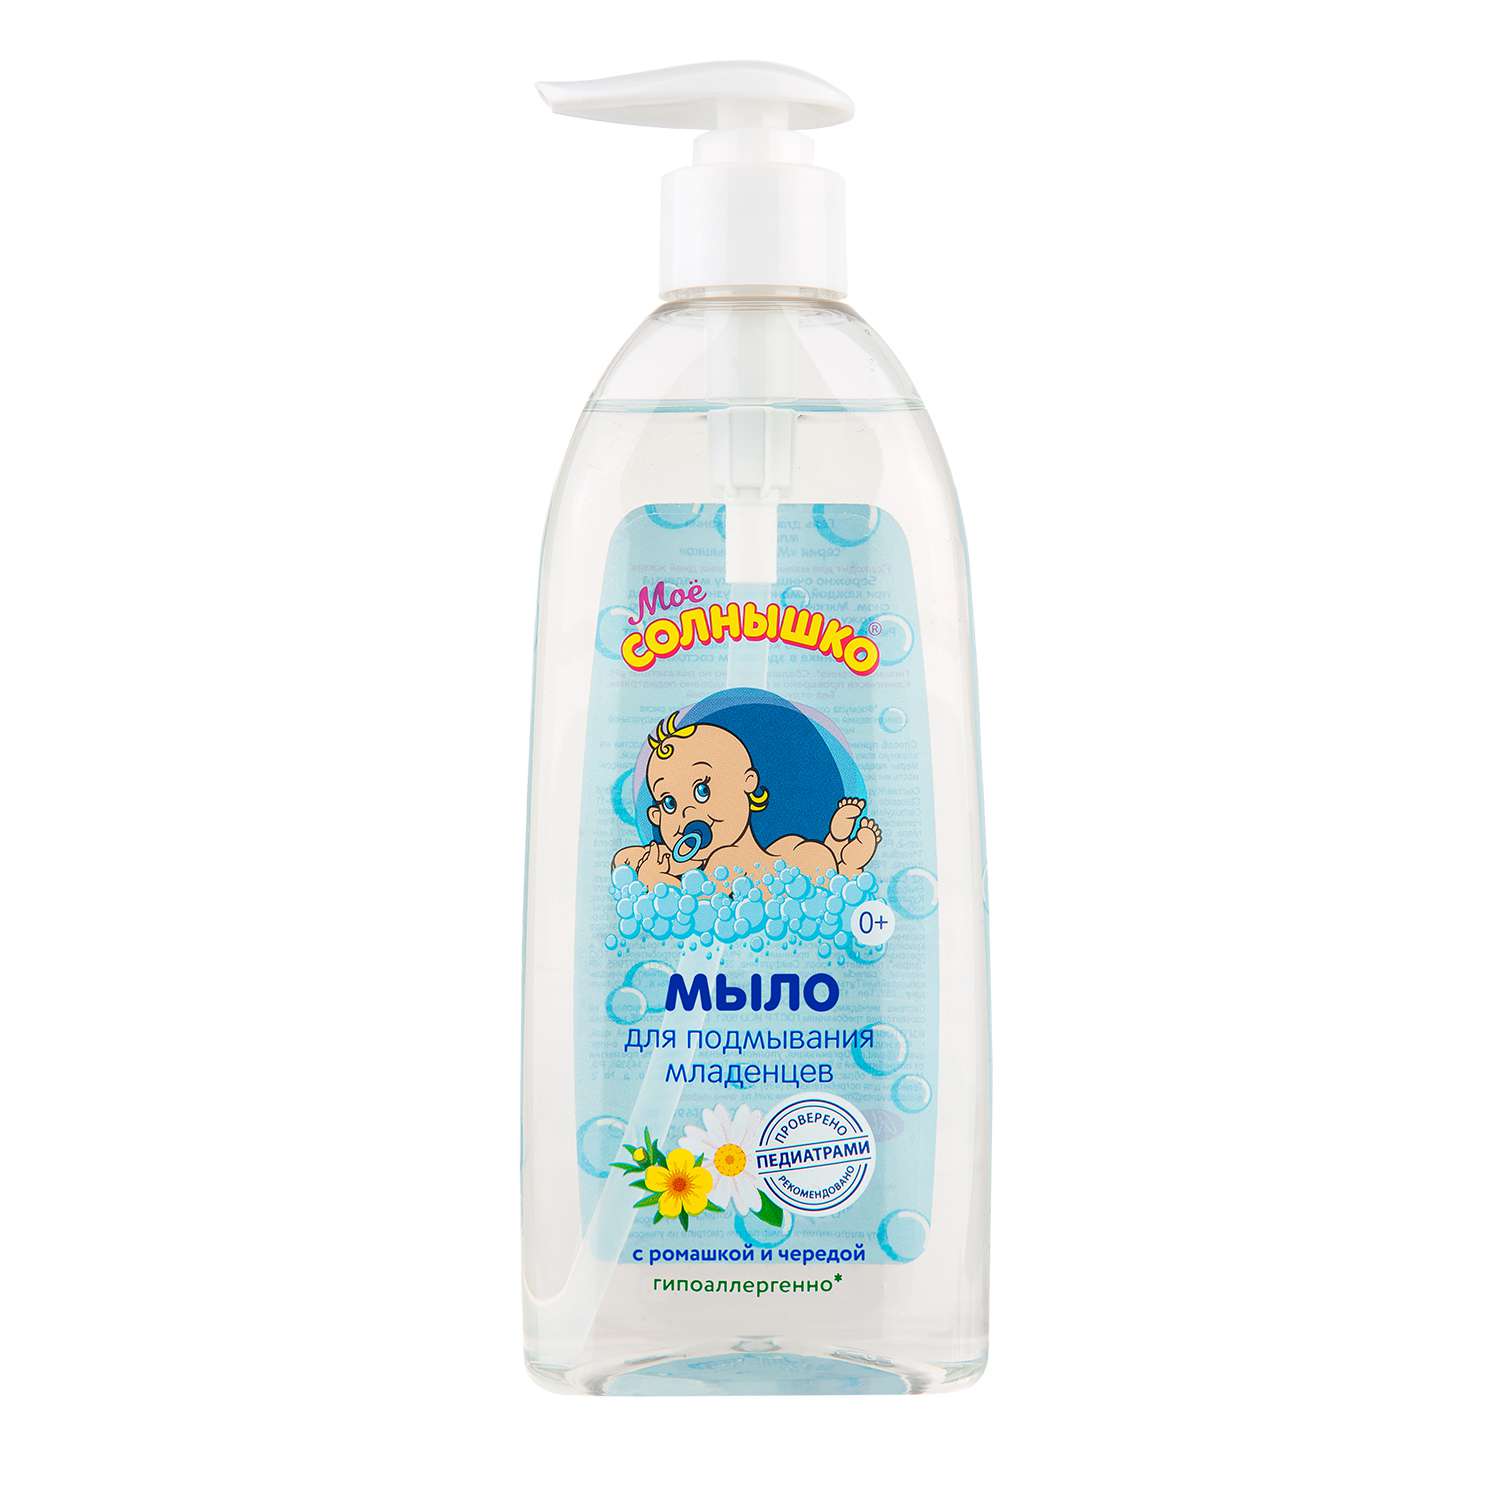 Жидкое мыло 400мл для подмывания младенцев Мое солнышко - Тамбов 